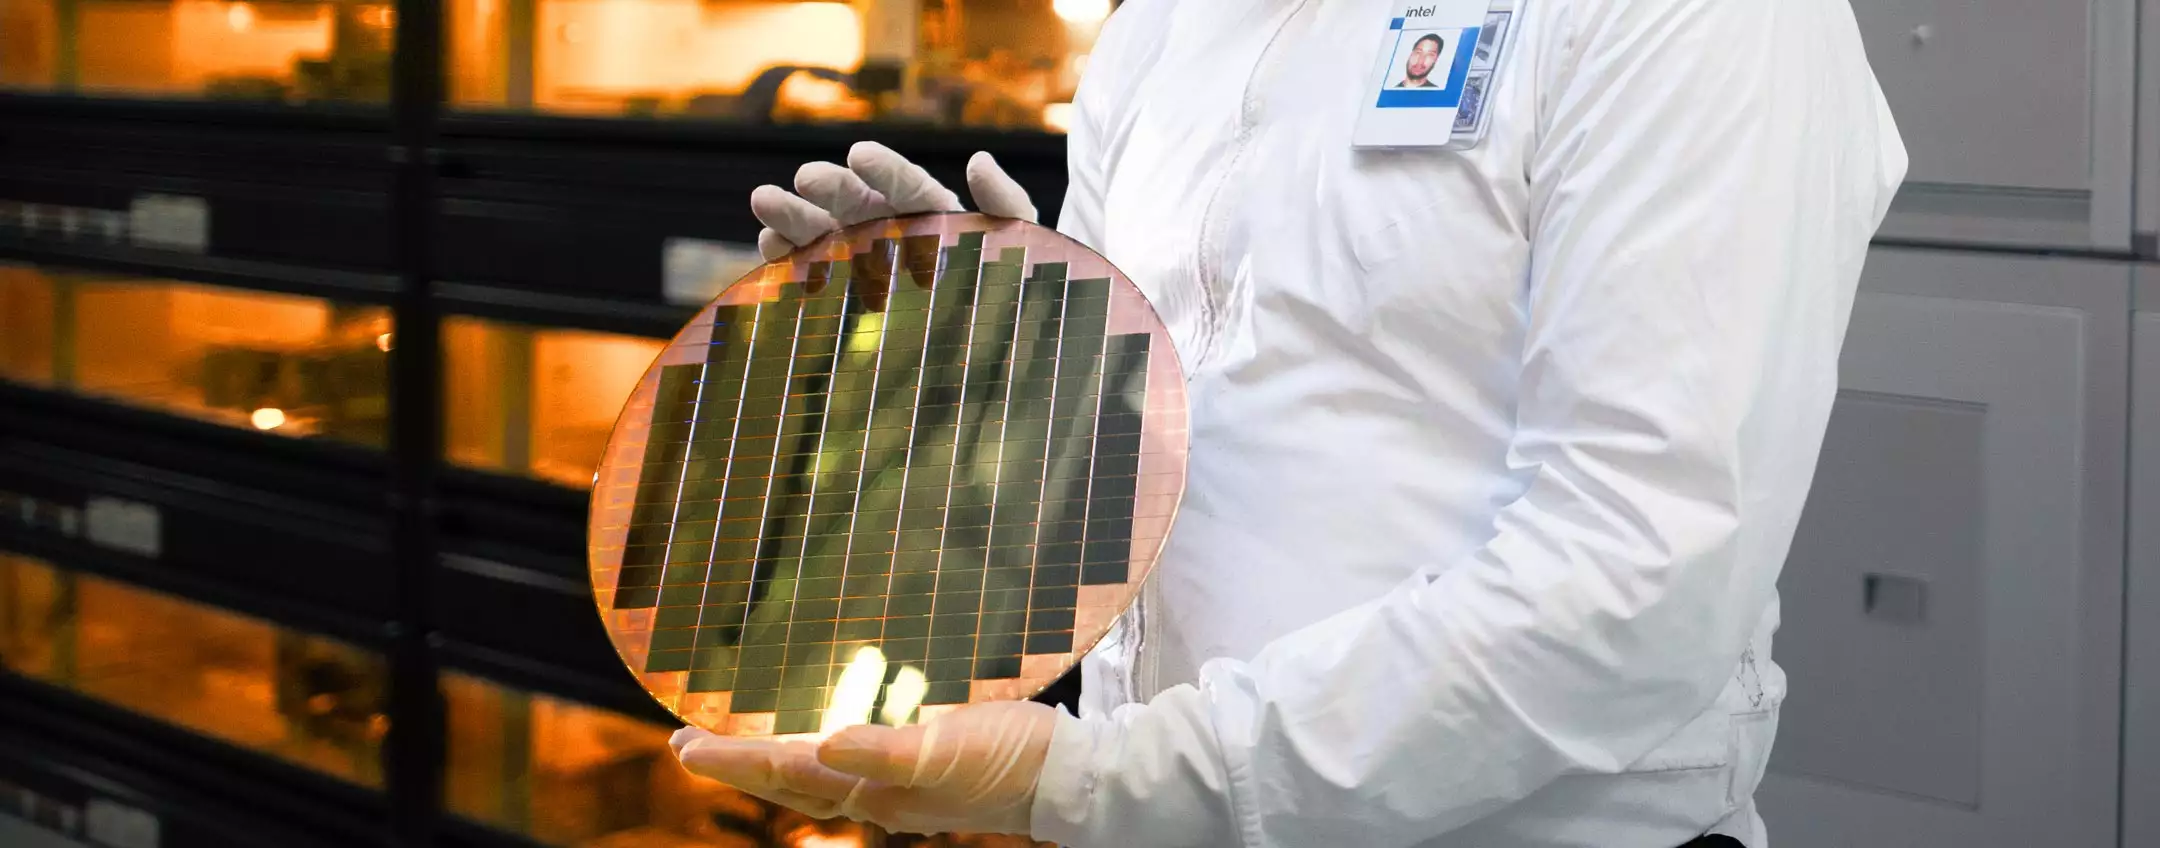 Intel planea gastar 100 mil millones de dólares en plantas de fabricación de chips en EE. UU.